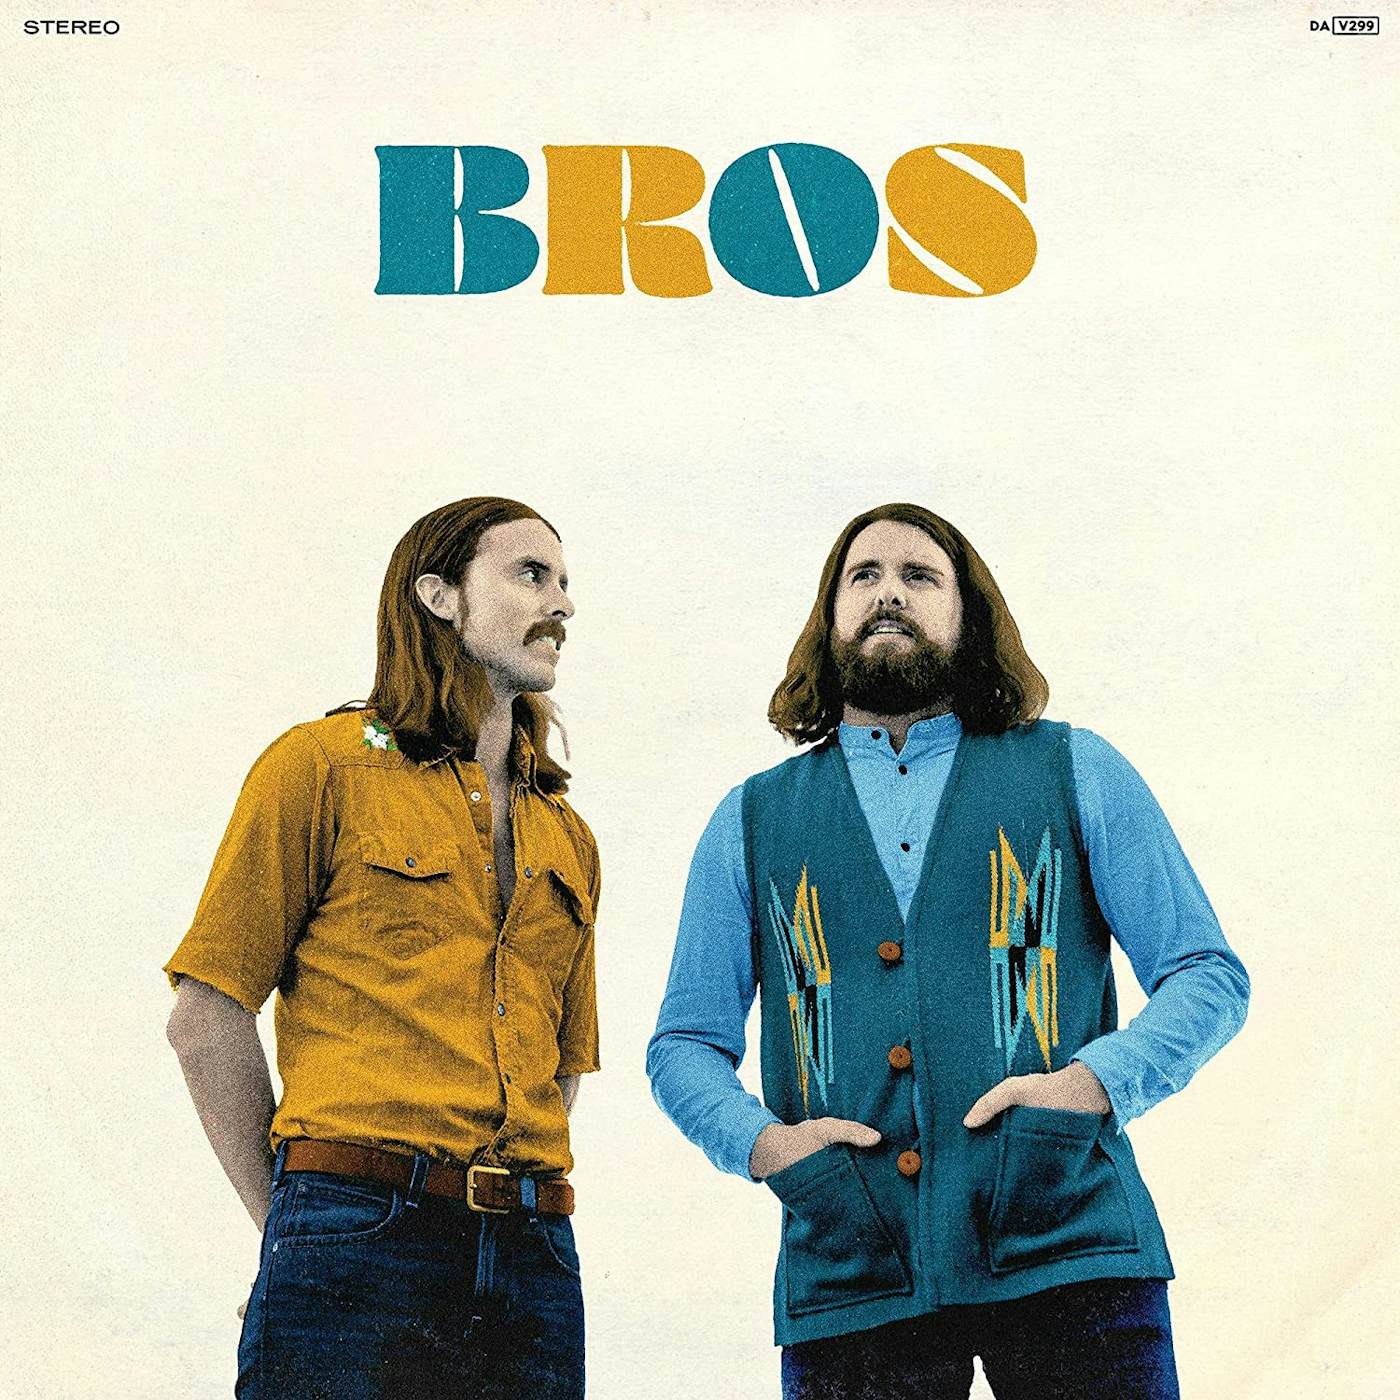 BROS Vol. 2 Vinyl Record